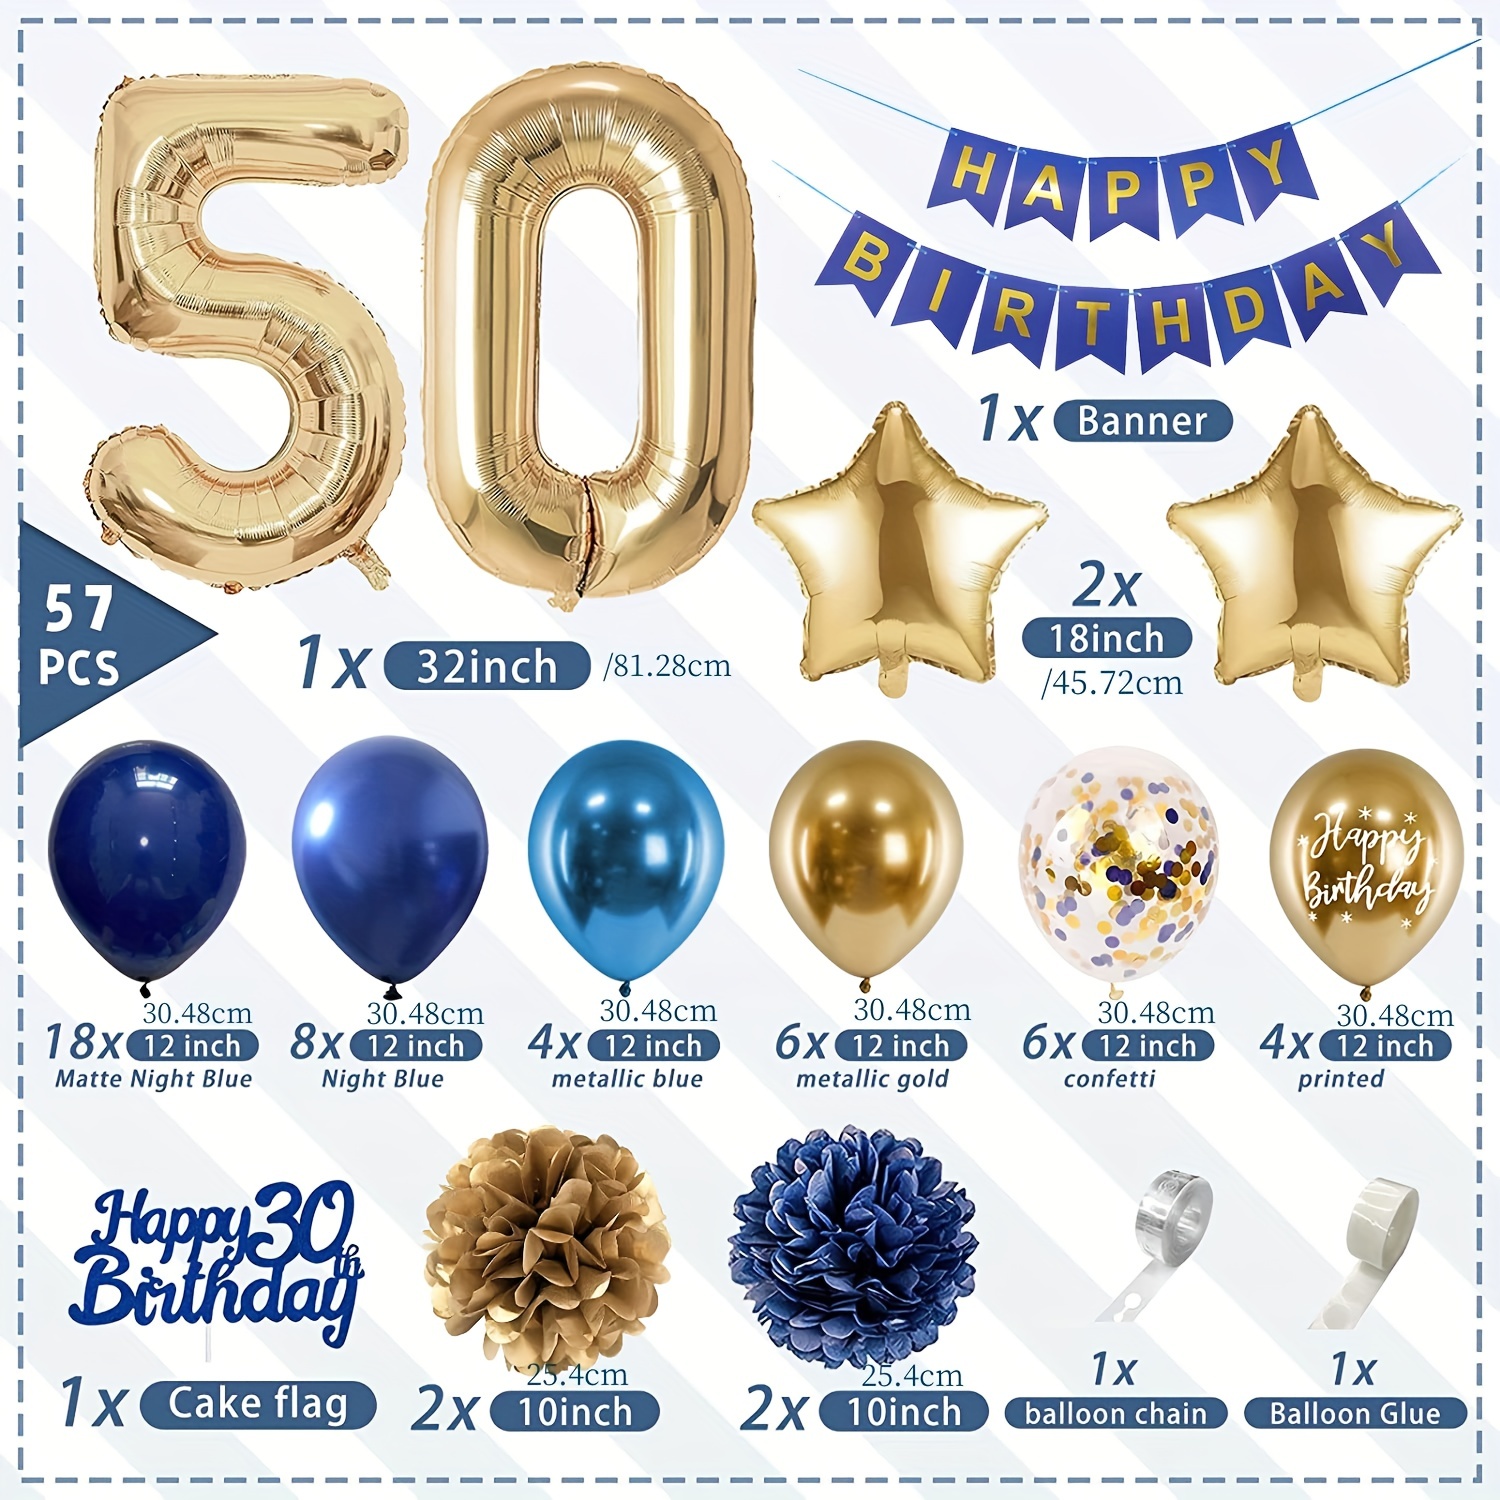 Decoraciones de fiesta de feliz cumpleaños número 50 azul marino